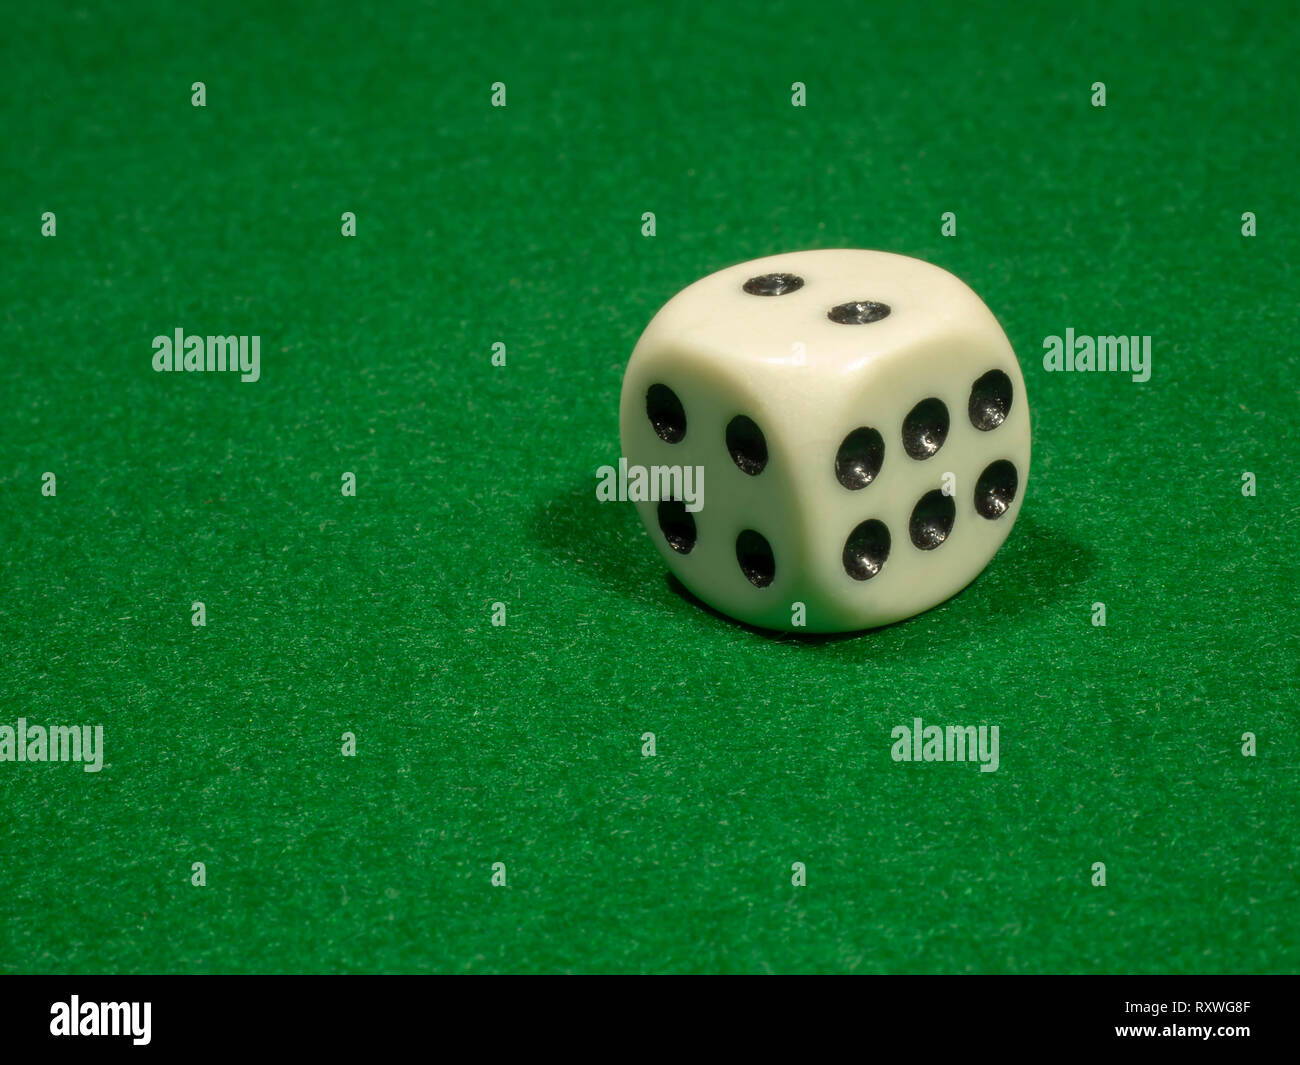 El hueso cubo de color blanco con puntos negros para gamblings mentiras sobre el paño verde. Foto de stock